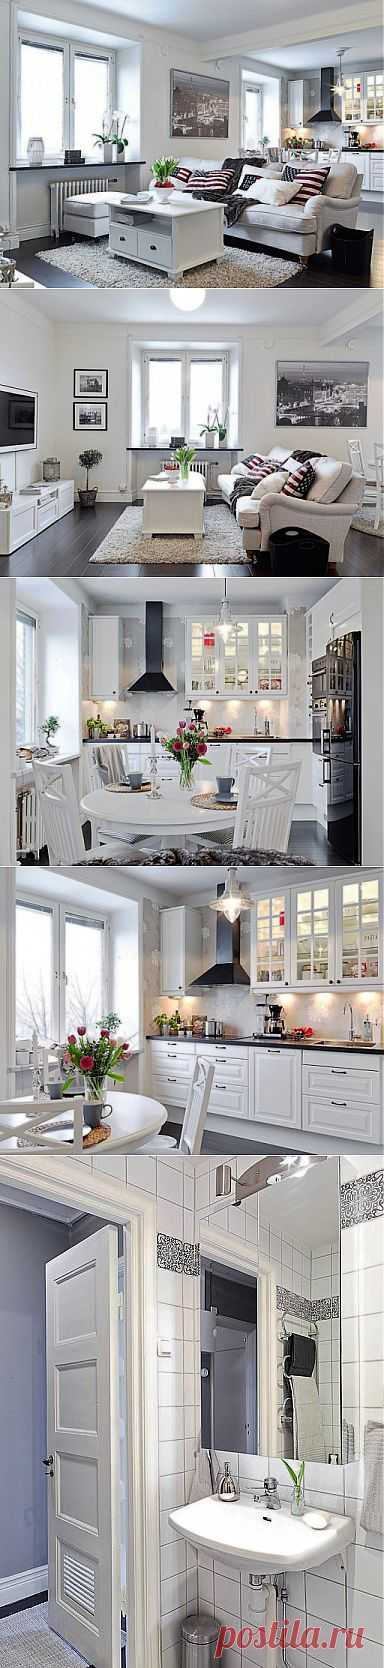 Пример интерьера белой кухни гостиной в шведском стиле